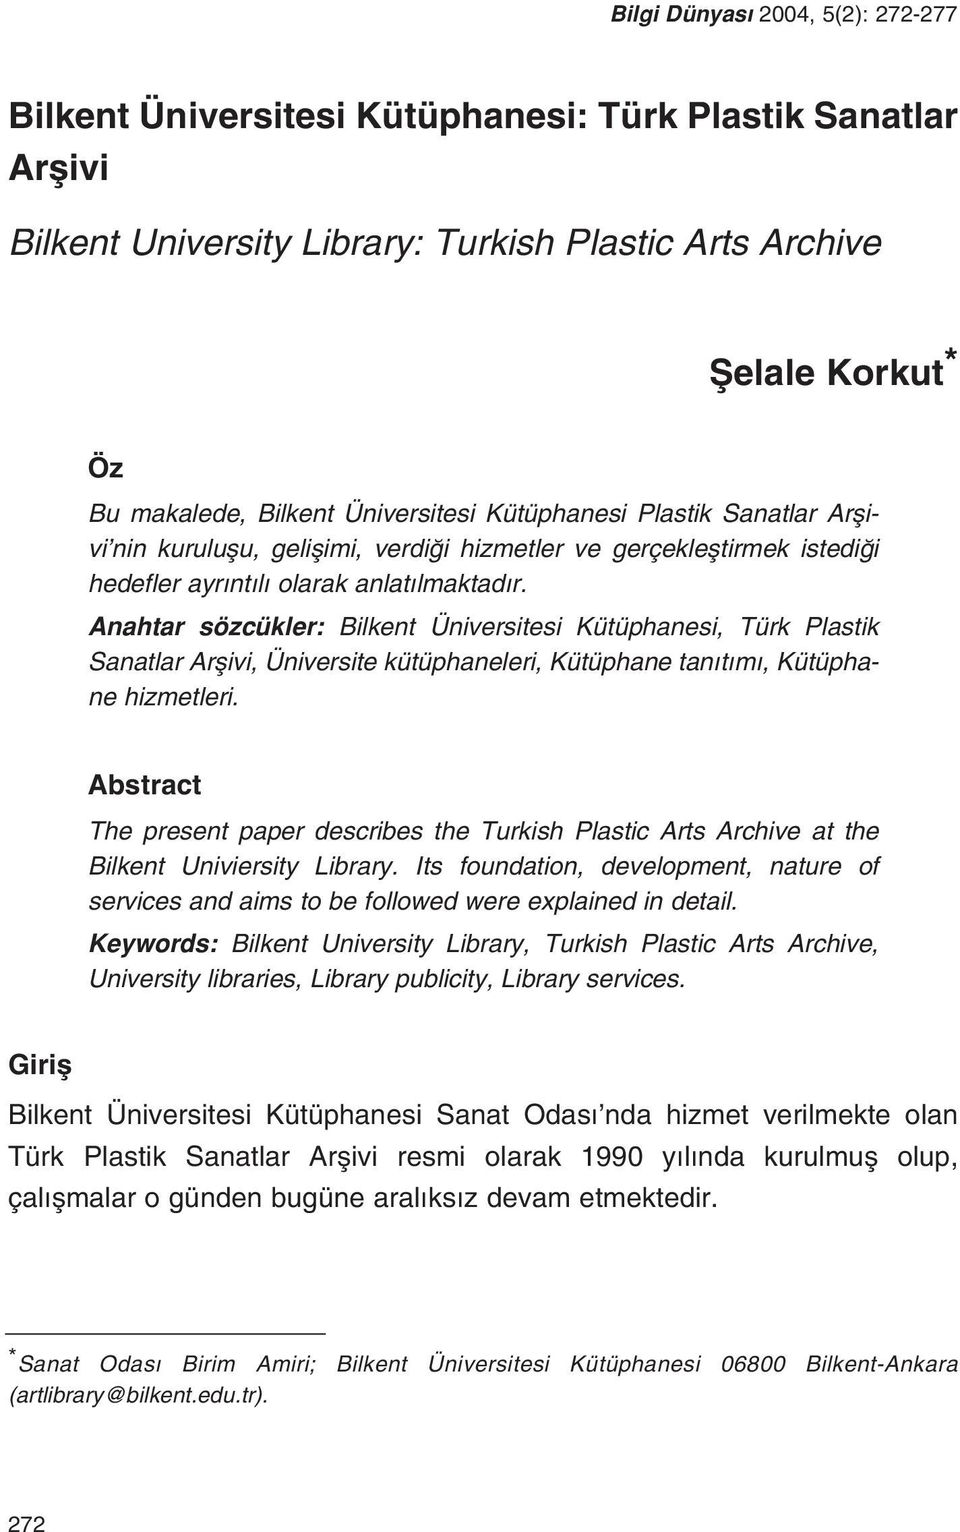 Anahtar sözcükler: Bilkent Üniversitesi Kütüphanesi, Türk Plastik Sanatlar Arflivi, Üniversite kütüphaneleri, Kütüphane tan t m, Kütüphane hizmetleri.